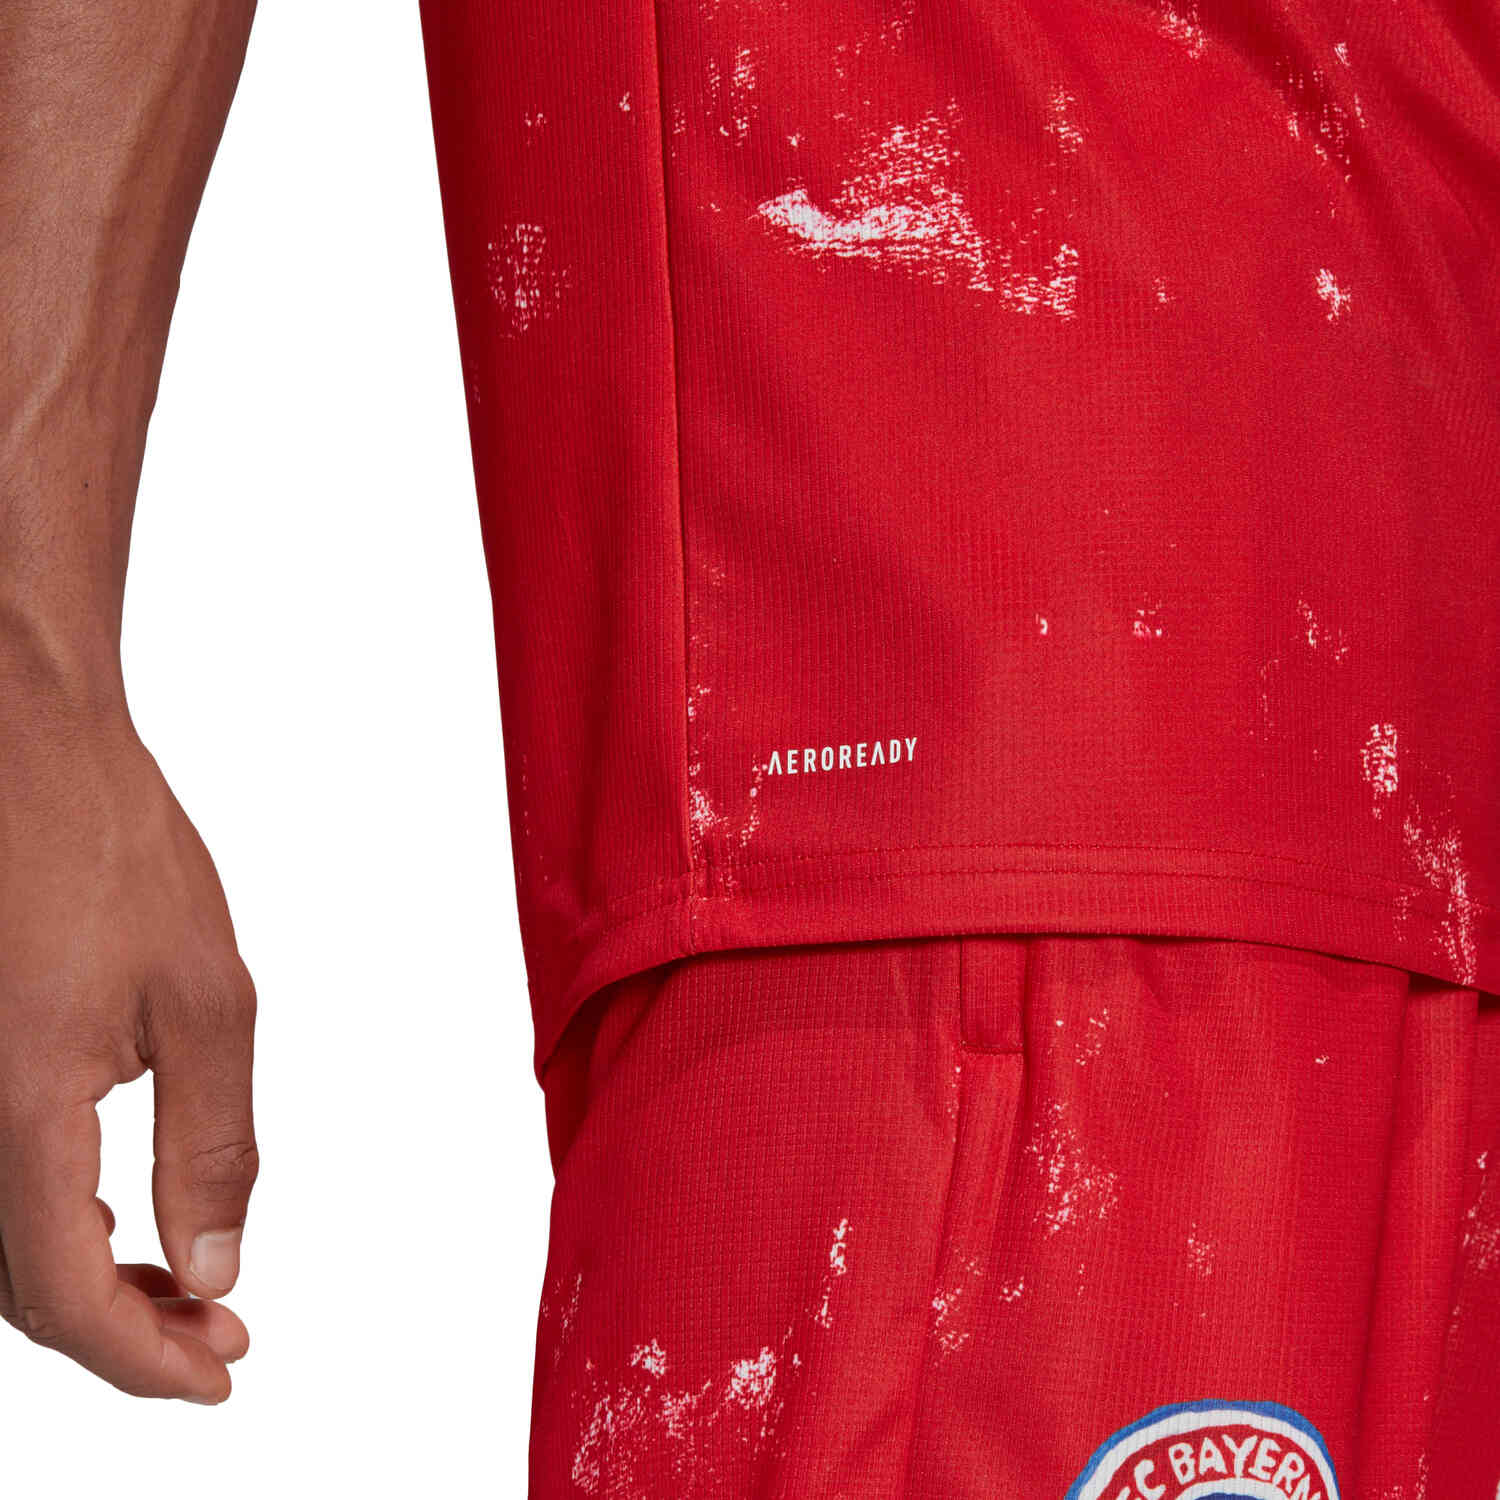 2020/21 adidas Bayern Munich Human Race Jersey - SoccerPro